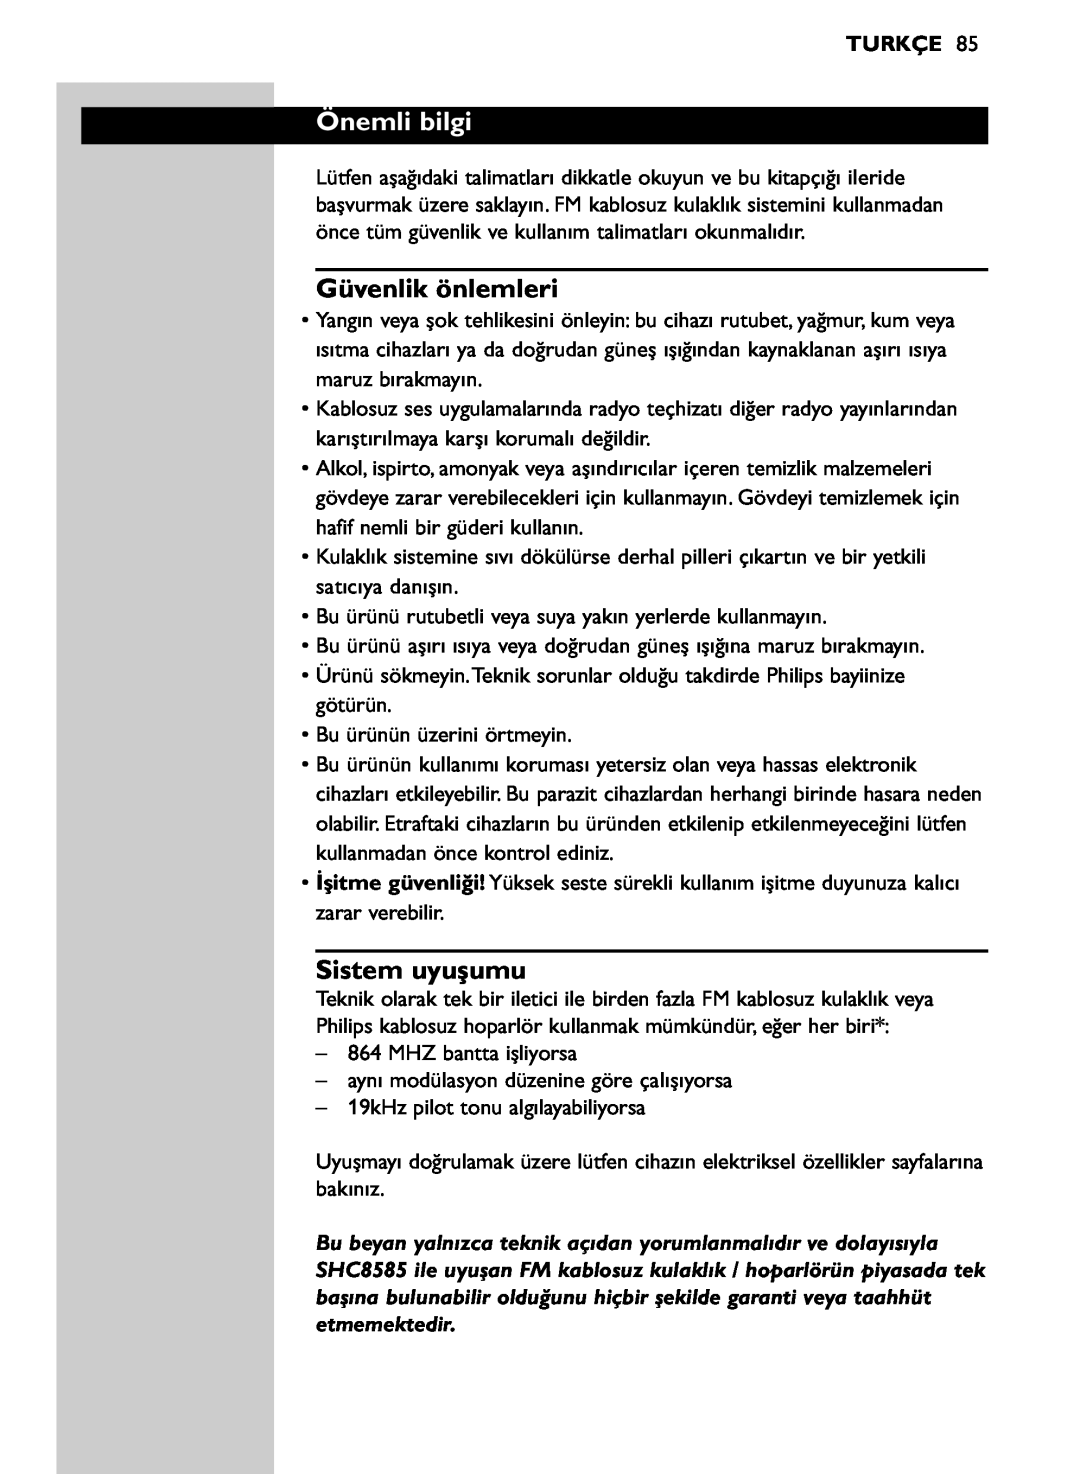 Philips SHC8585/00 manual Önemli bilgi, Güvenlik önlemleri, Sistem uyuşumu, Turkçe 